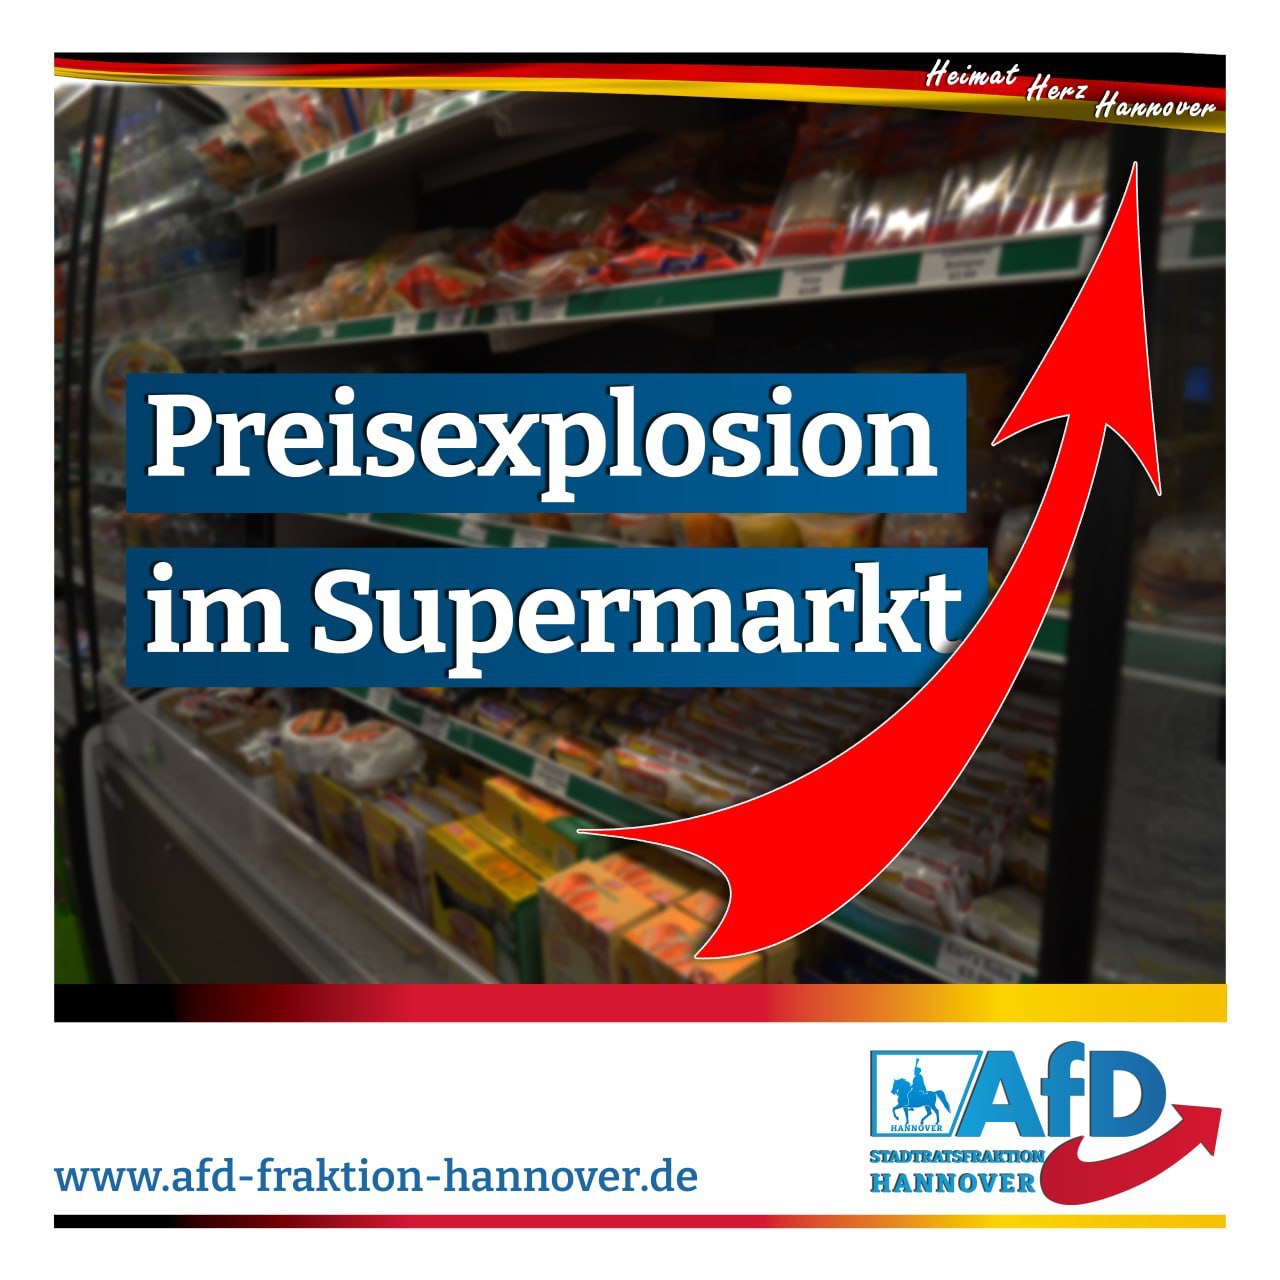 Preisexplosion im Supermarkt